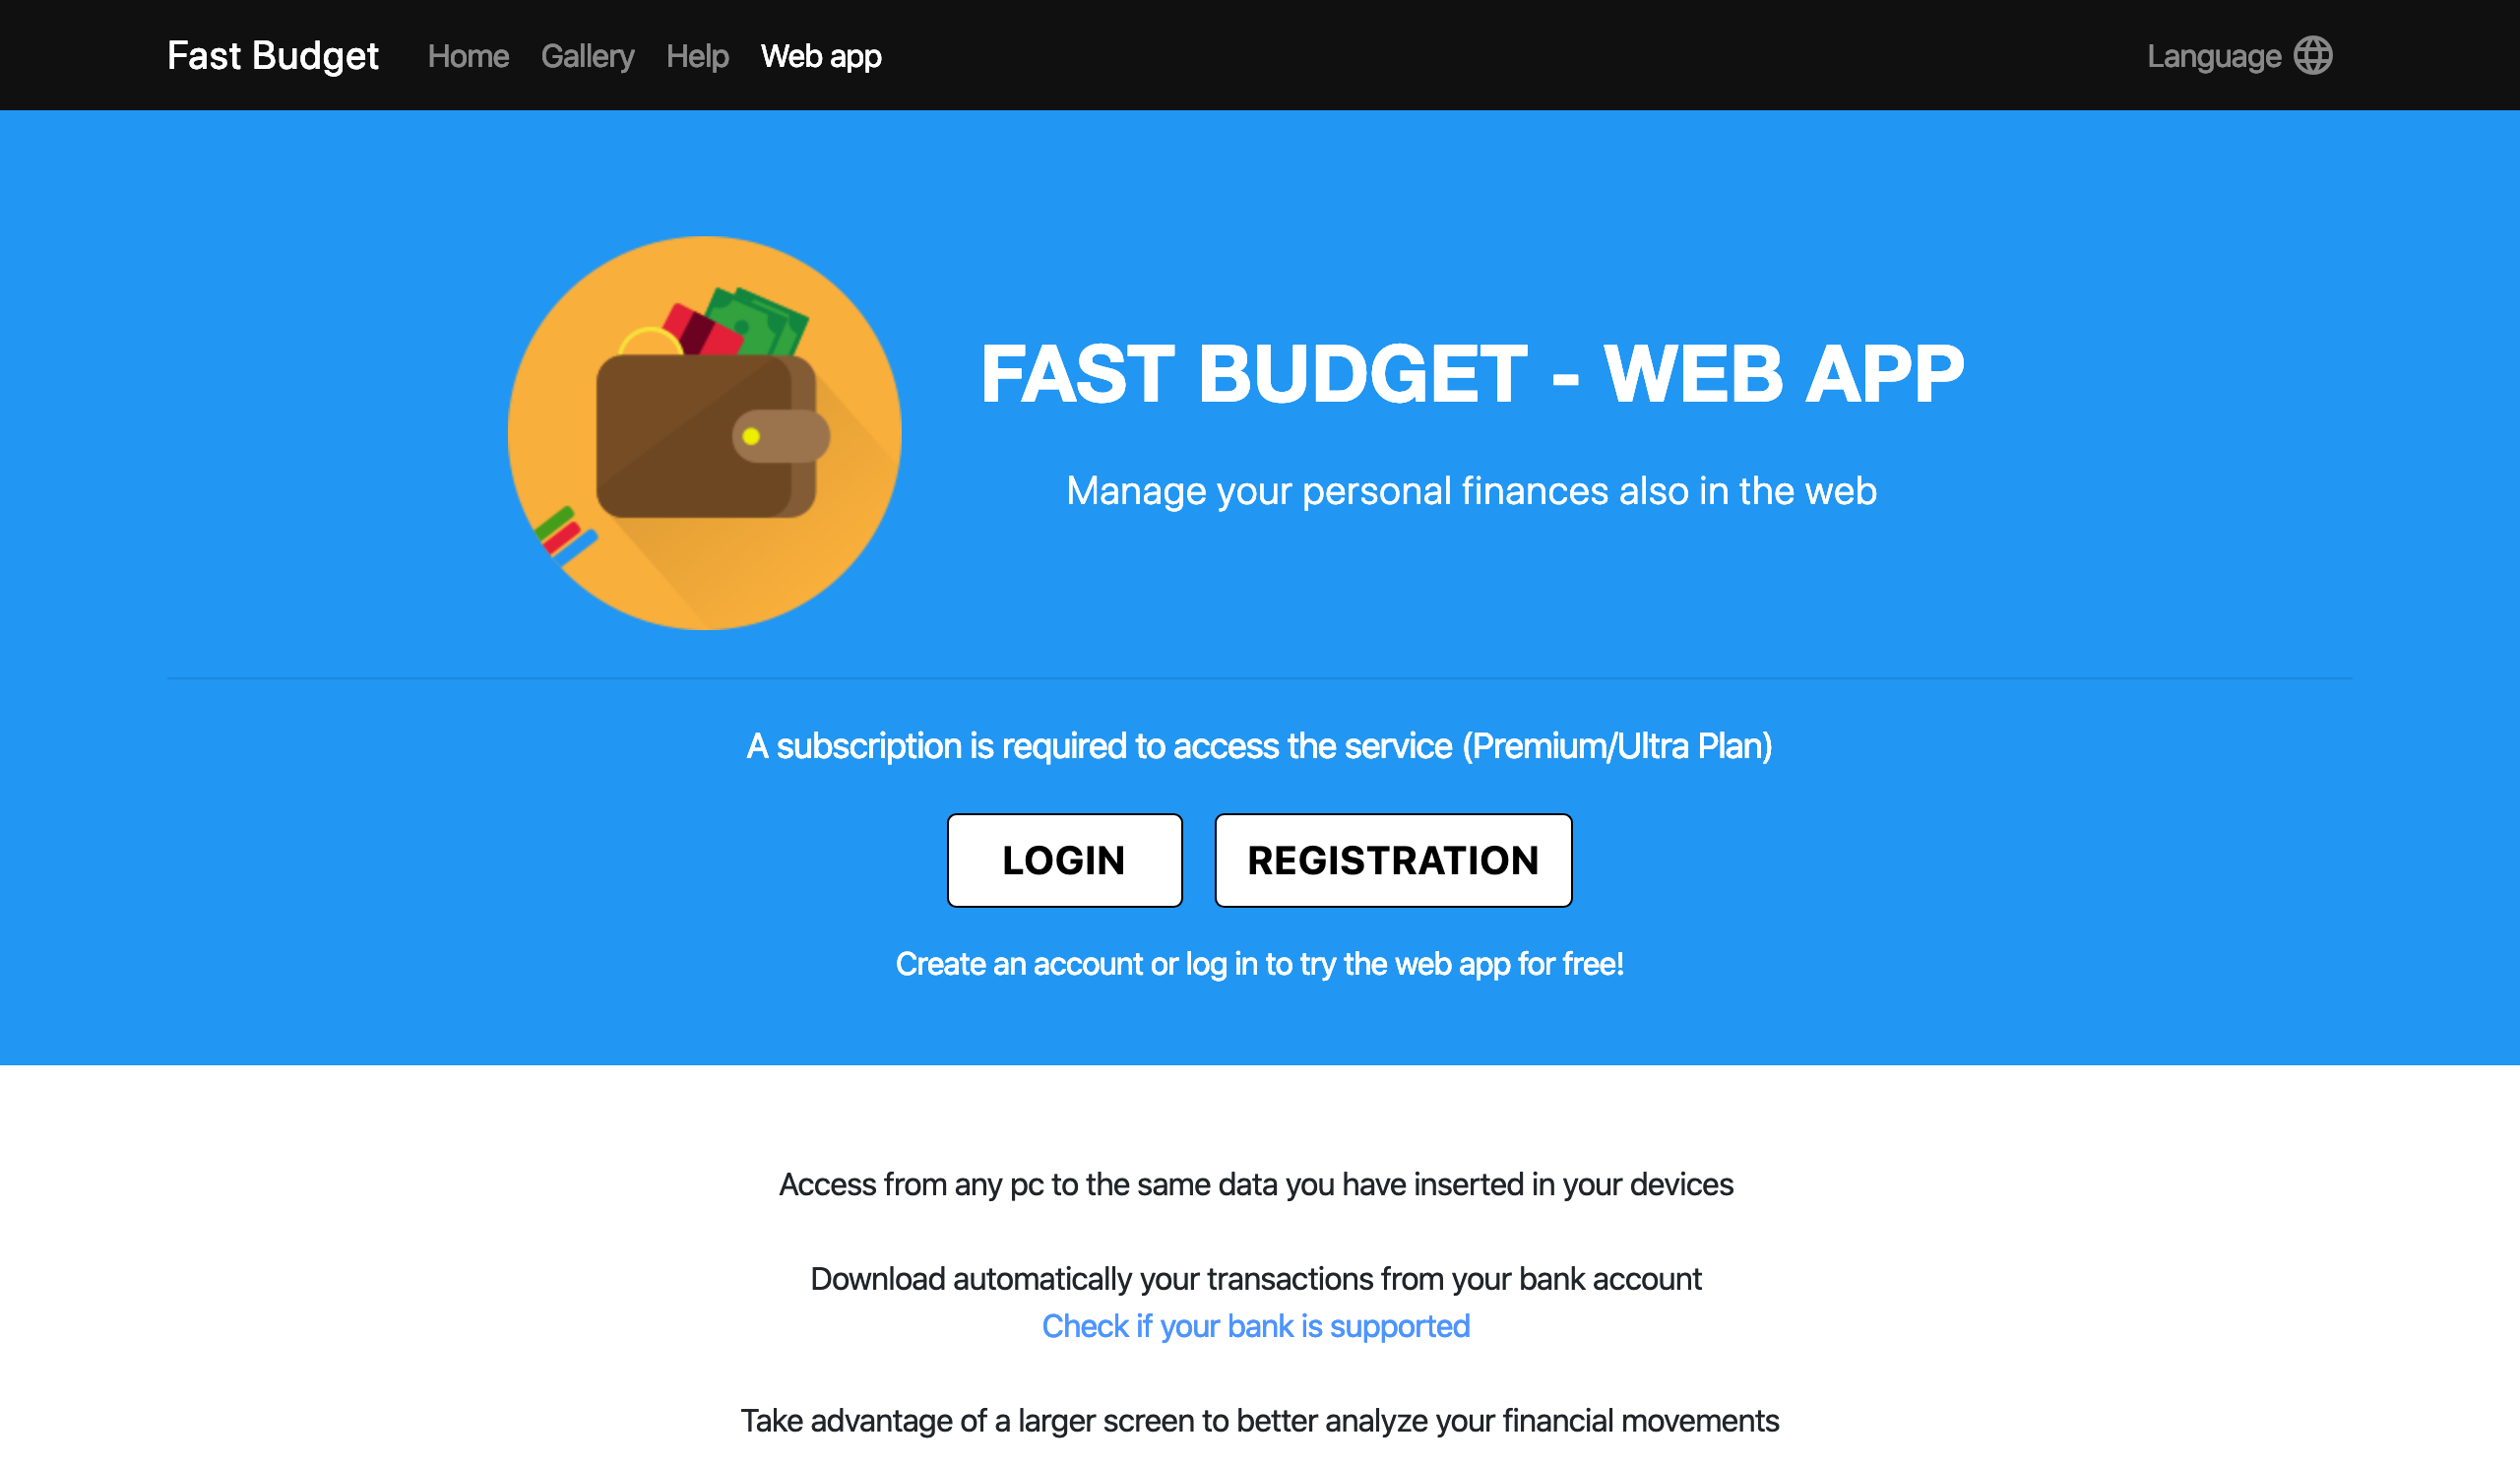 Fast Budget - Web App